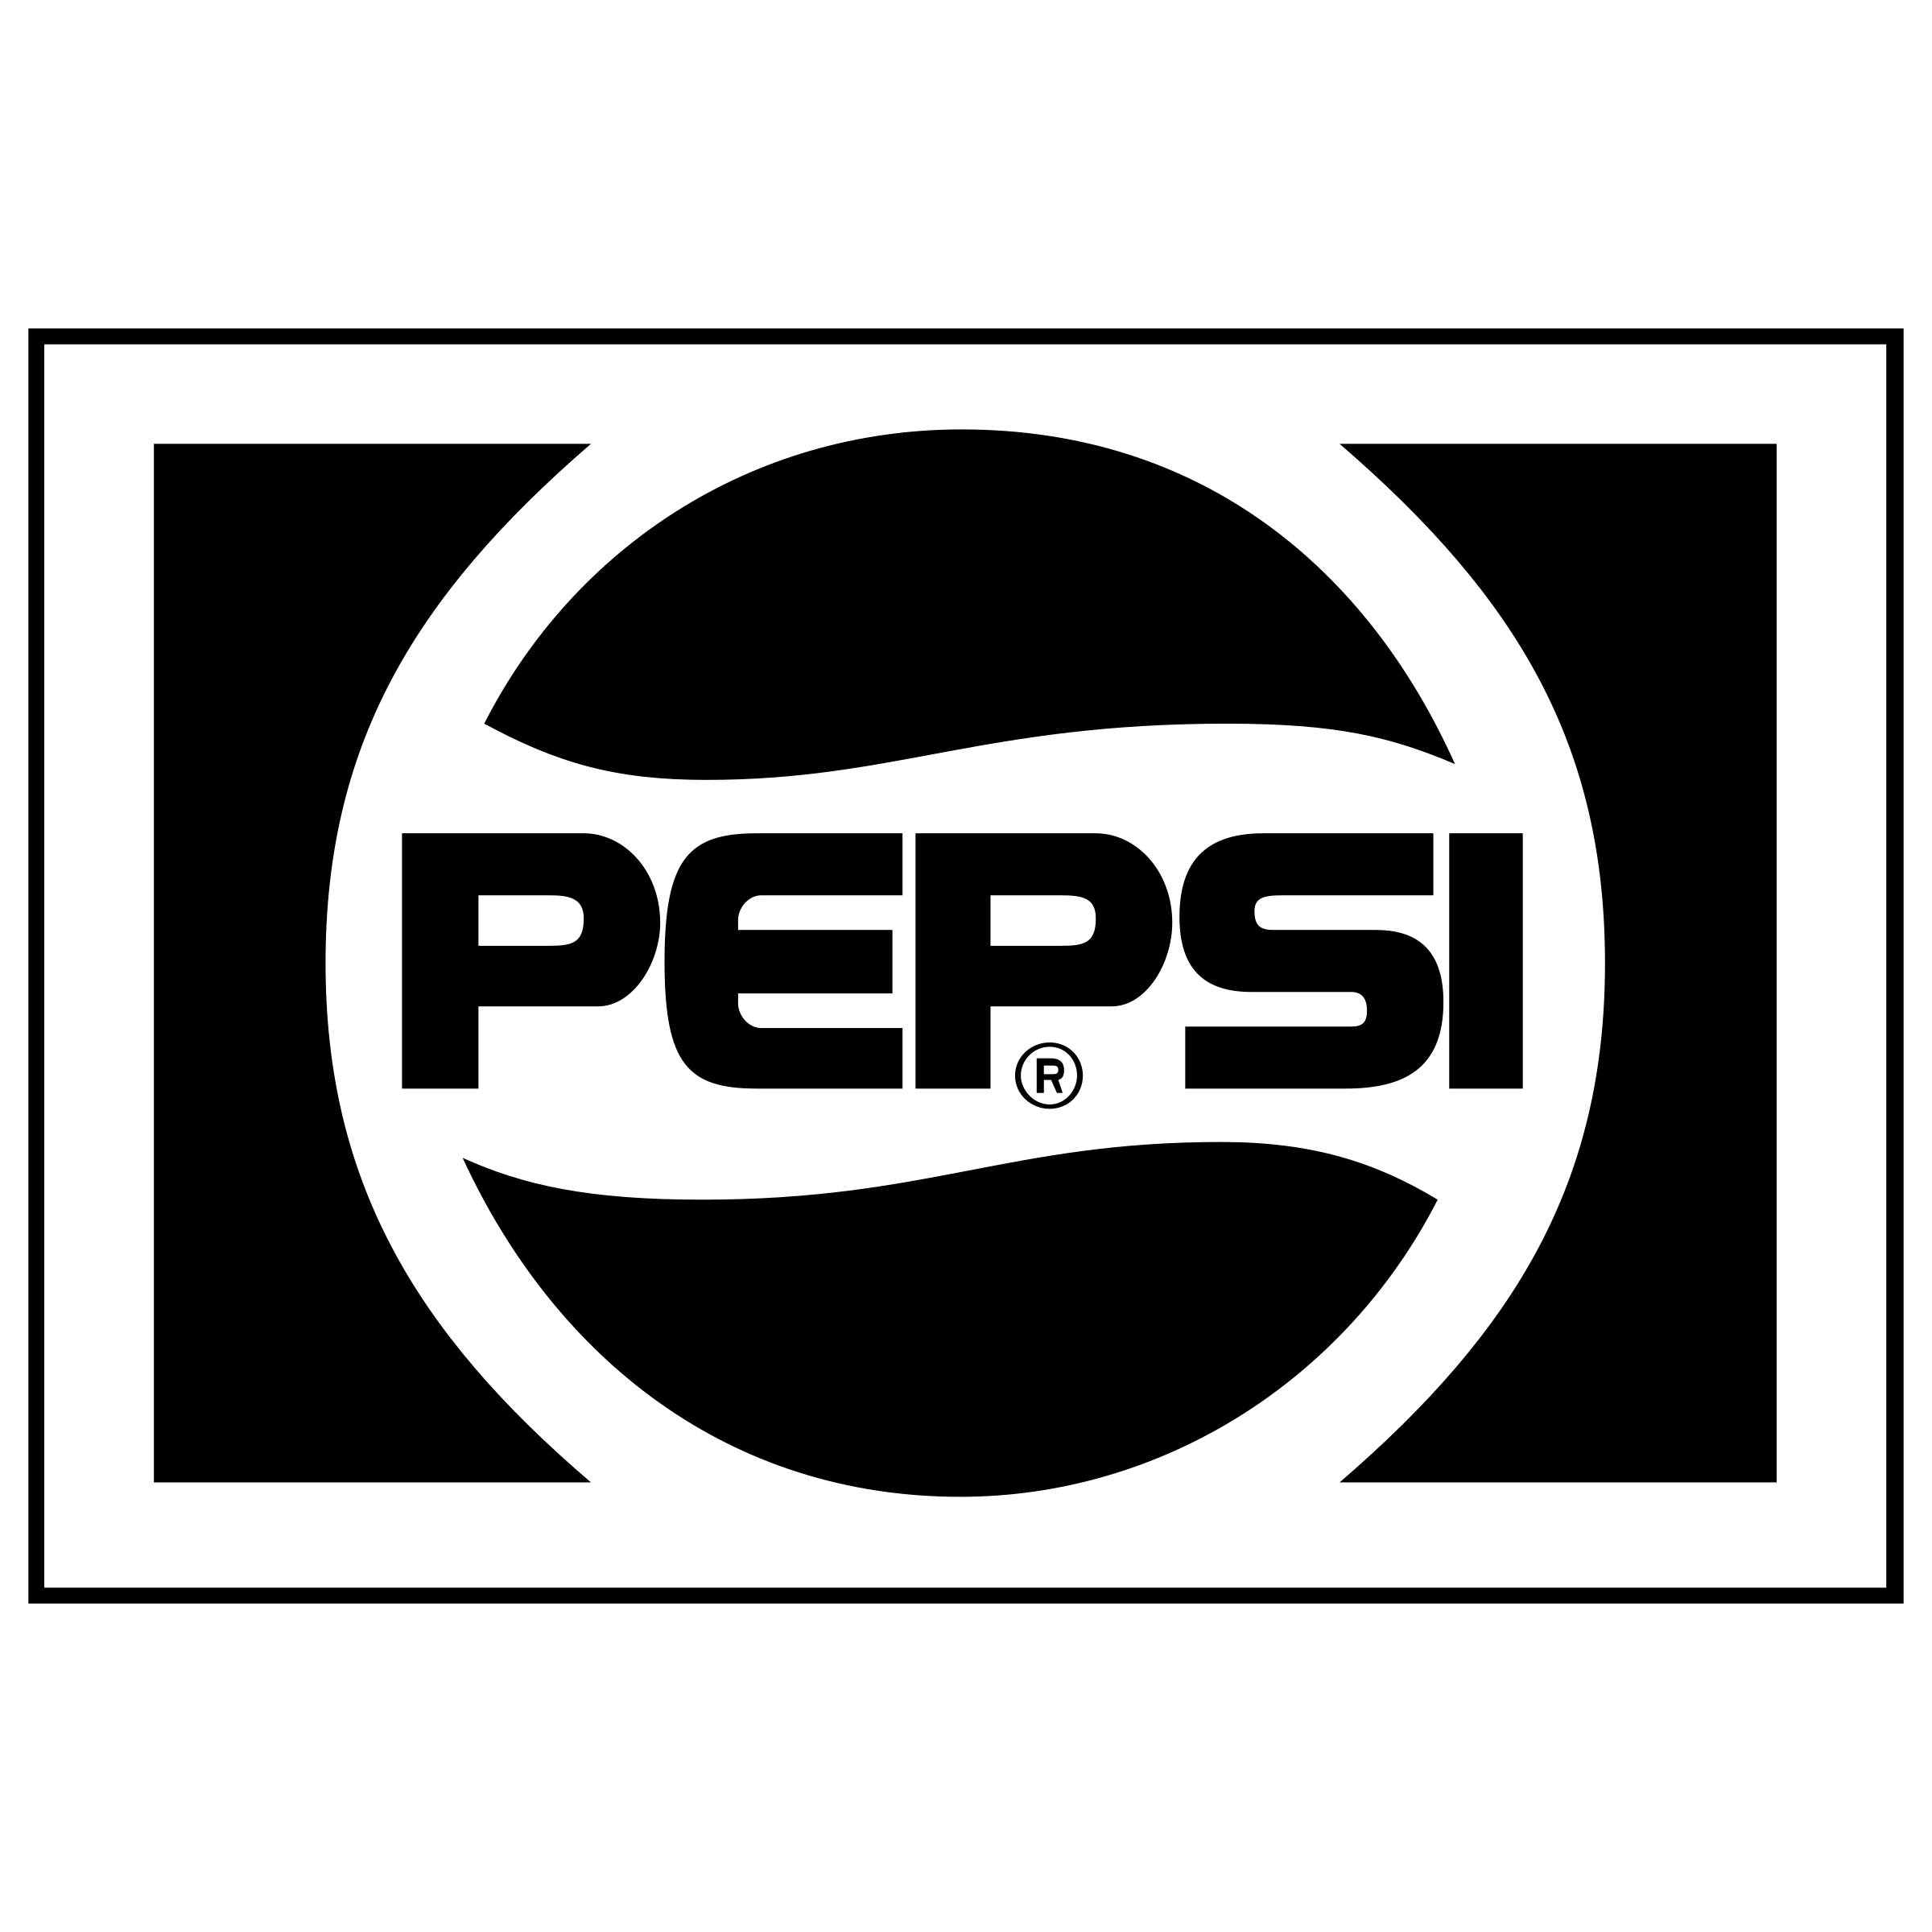 Pepis Logo - Pepsi Logo PNG Transparent & SVG Vector